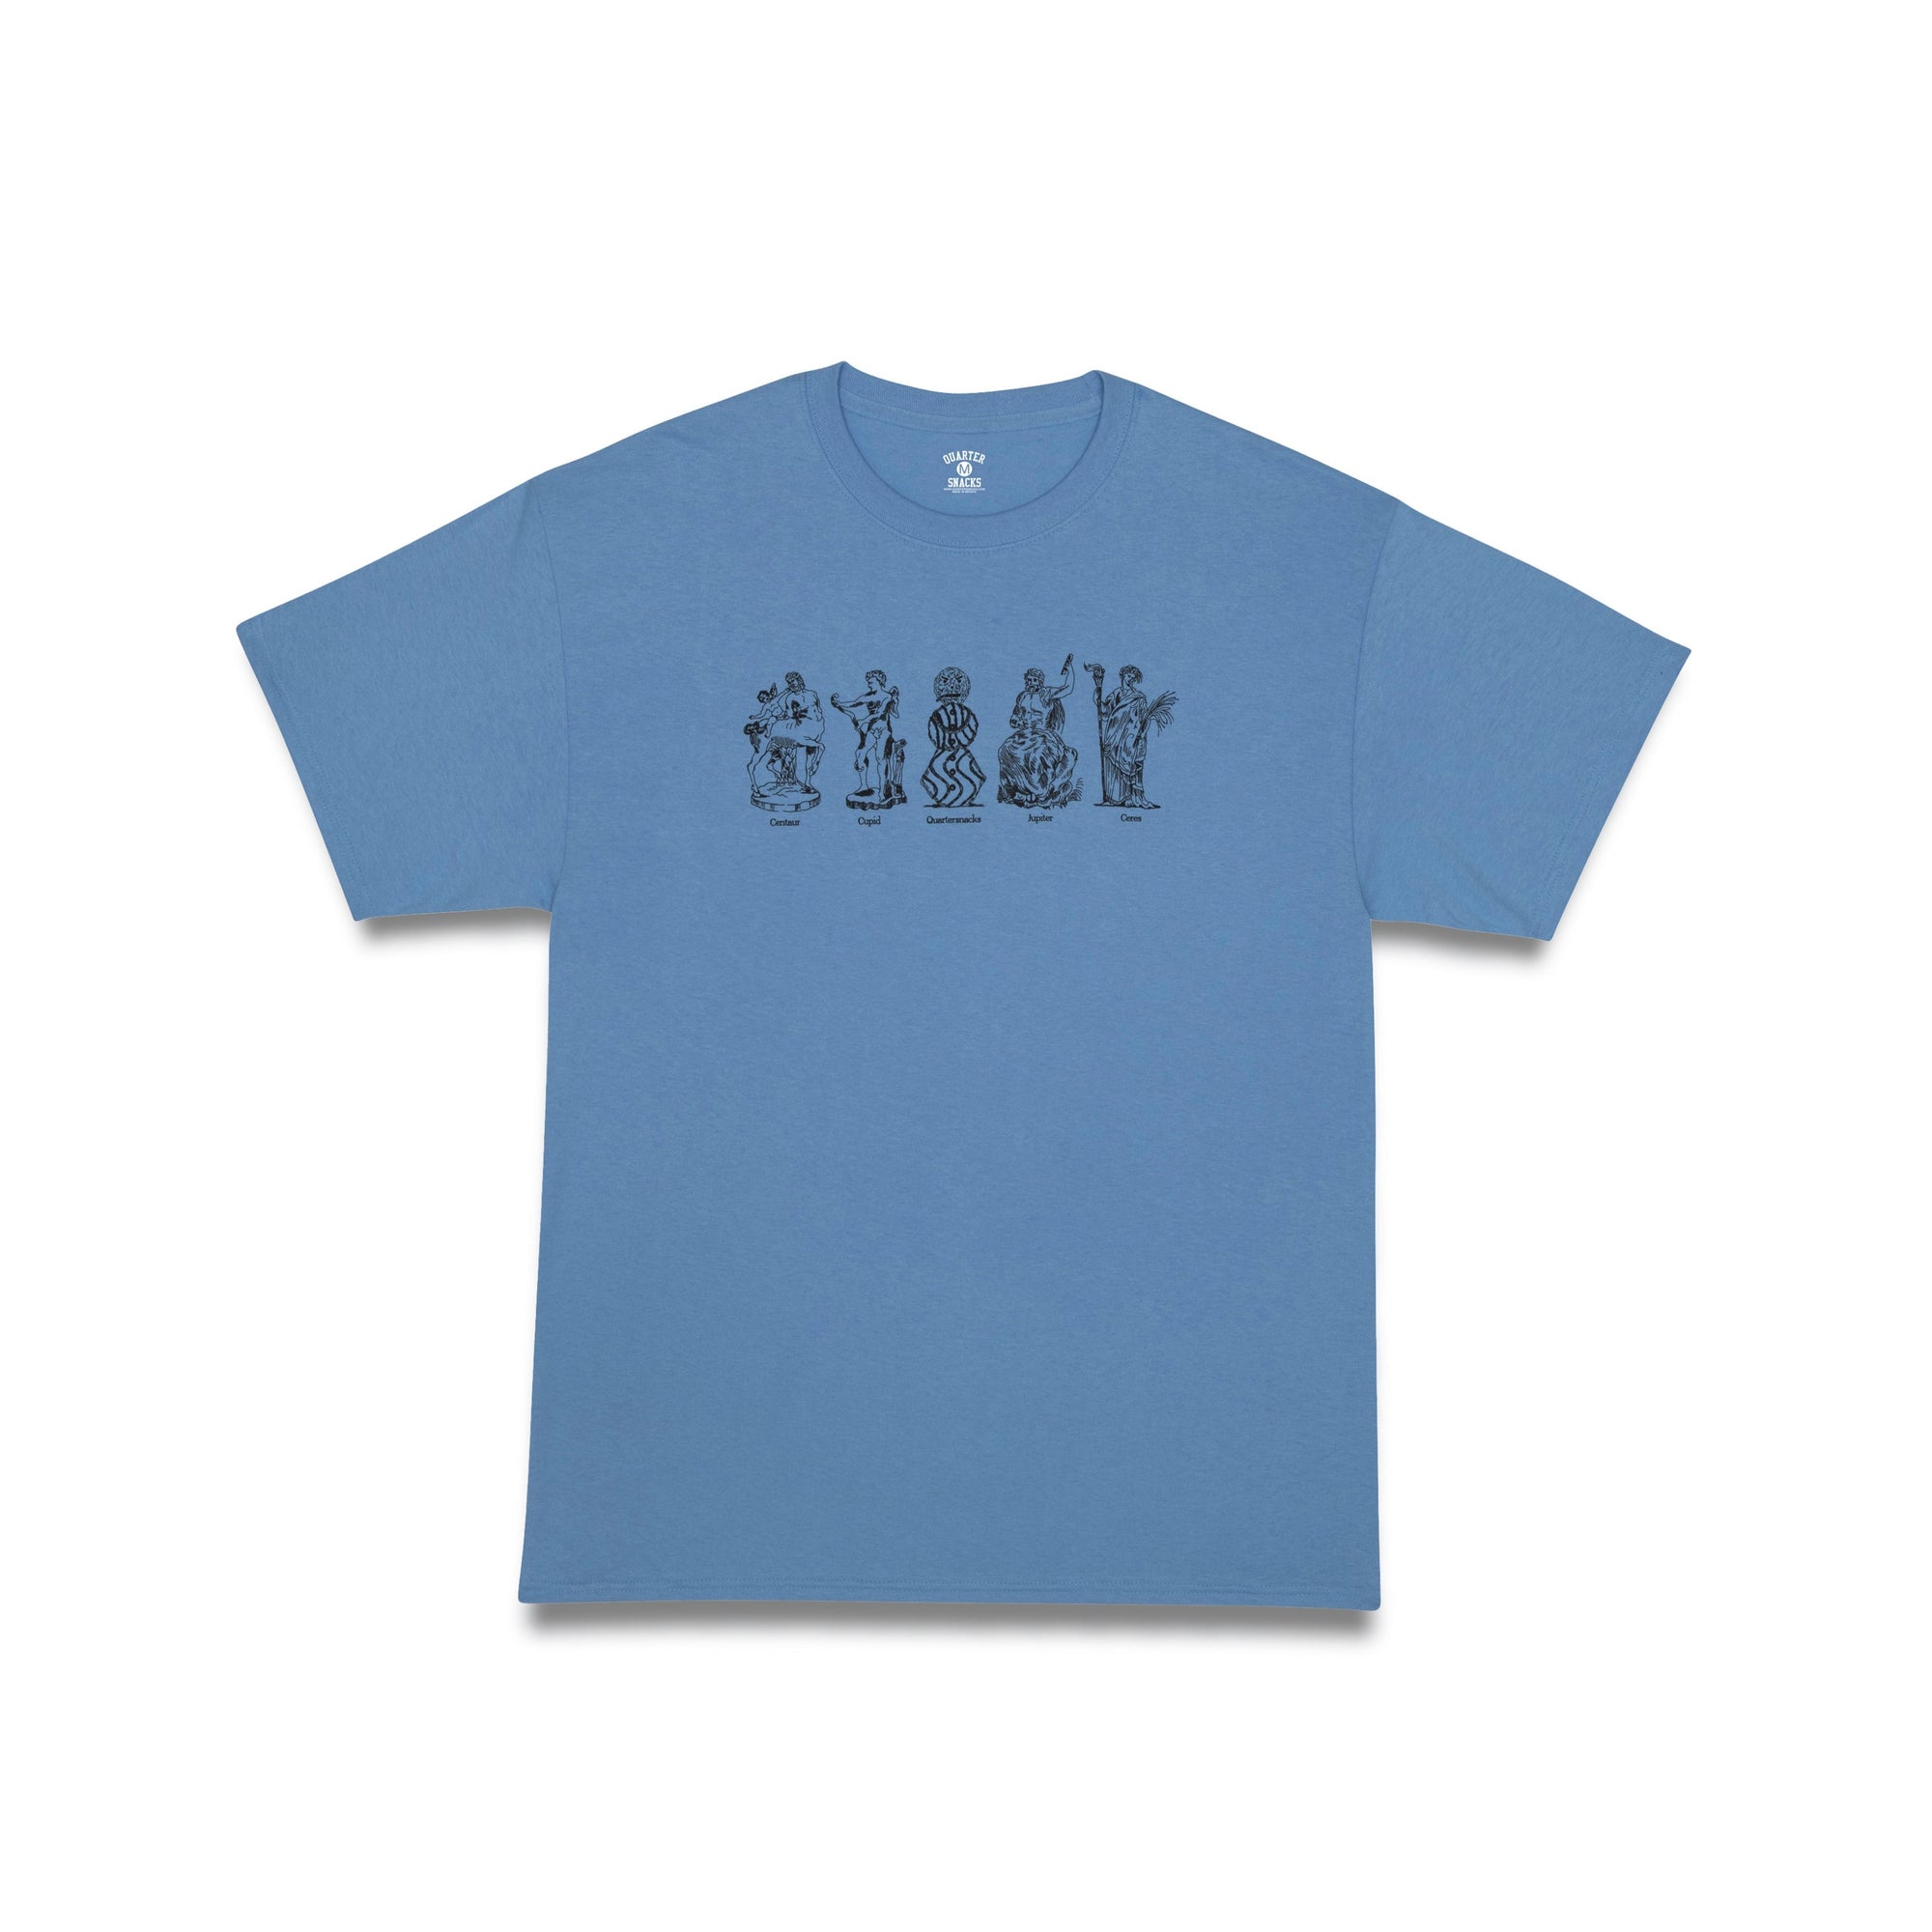 Quartersnacks Mythology T-Shirt Carolina Blue